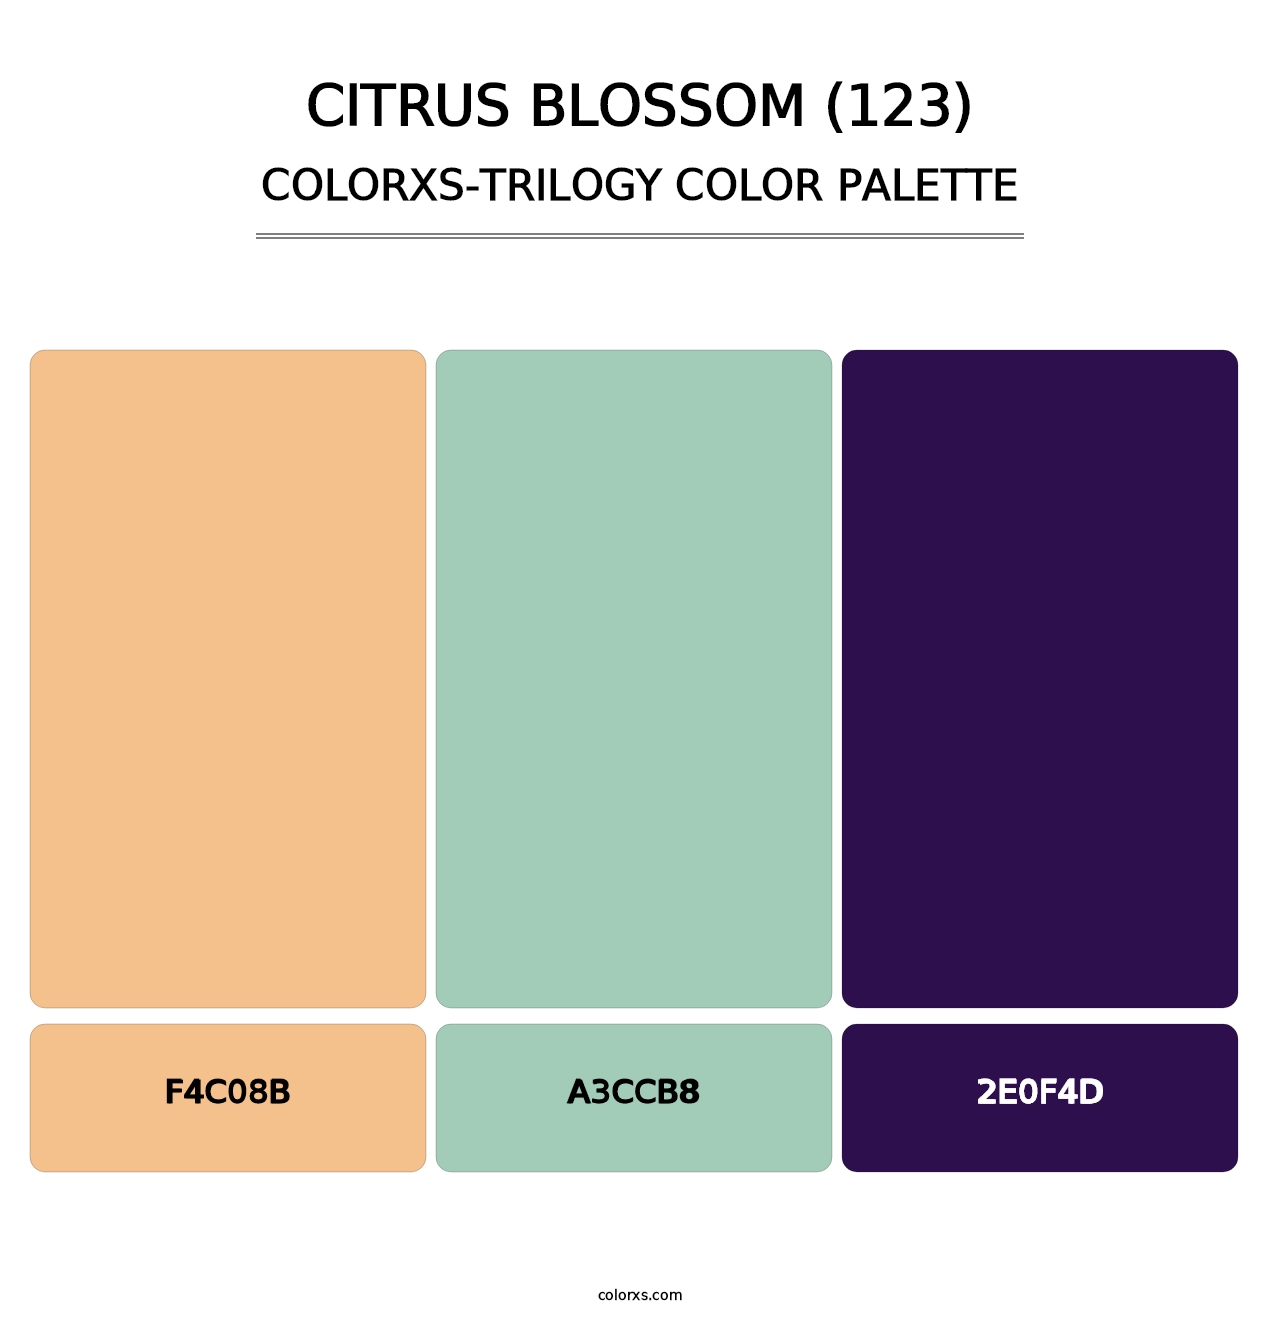 Citrus Blossom (123) - Colorxs Trilogy Palette